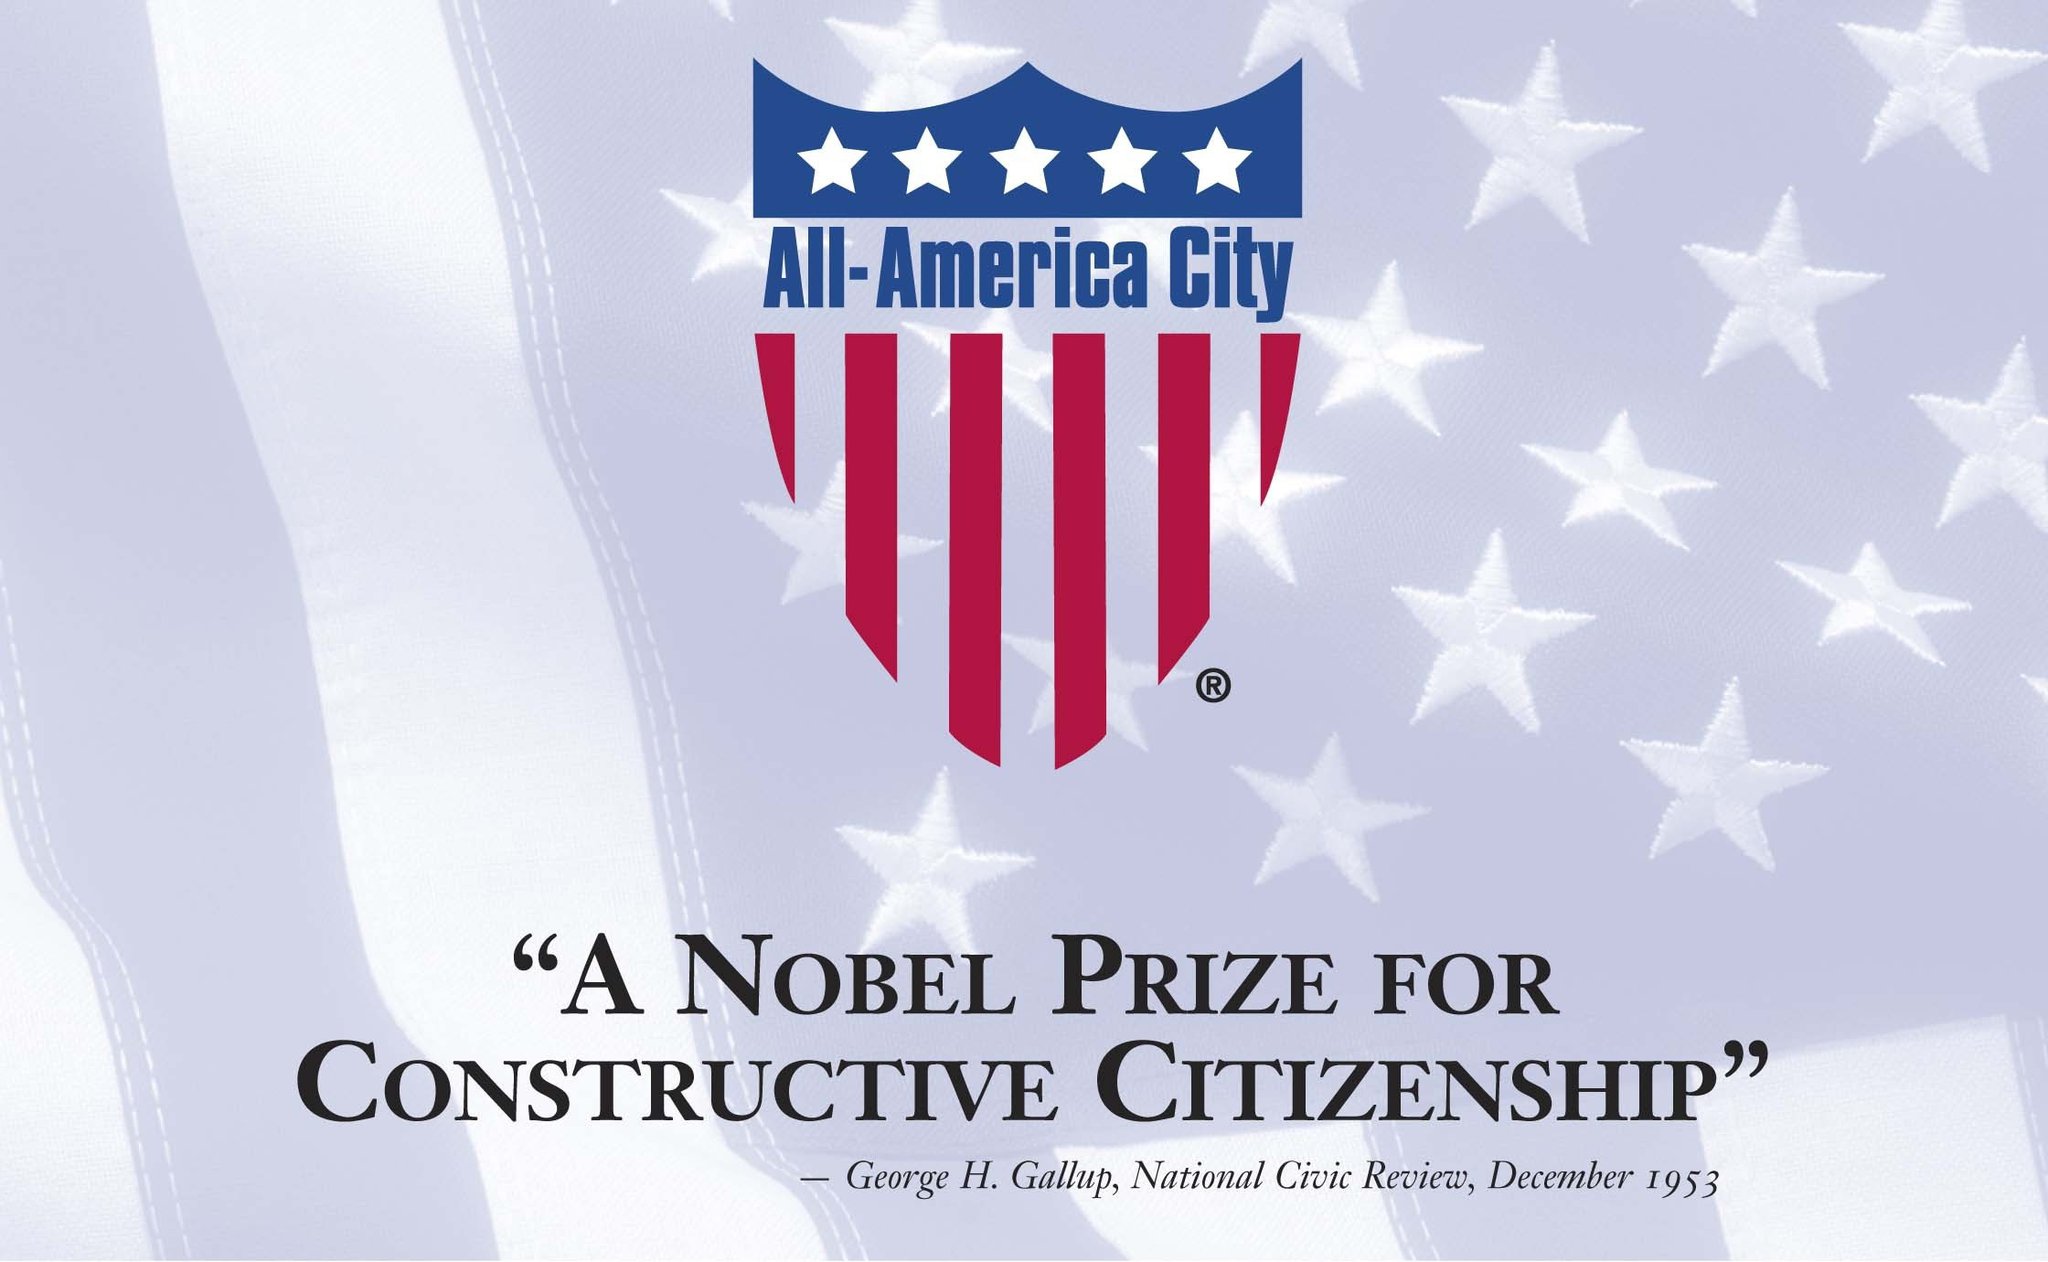 Town of Morrisville Named 2021 AllAmerica City Award Winner